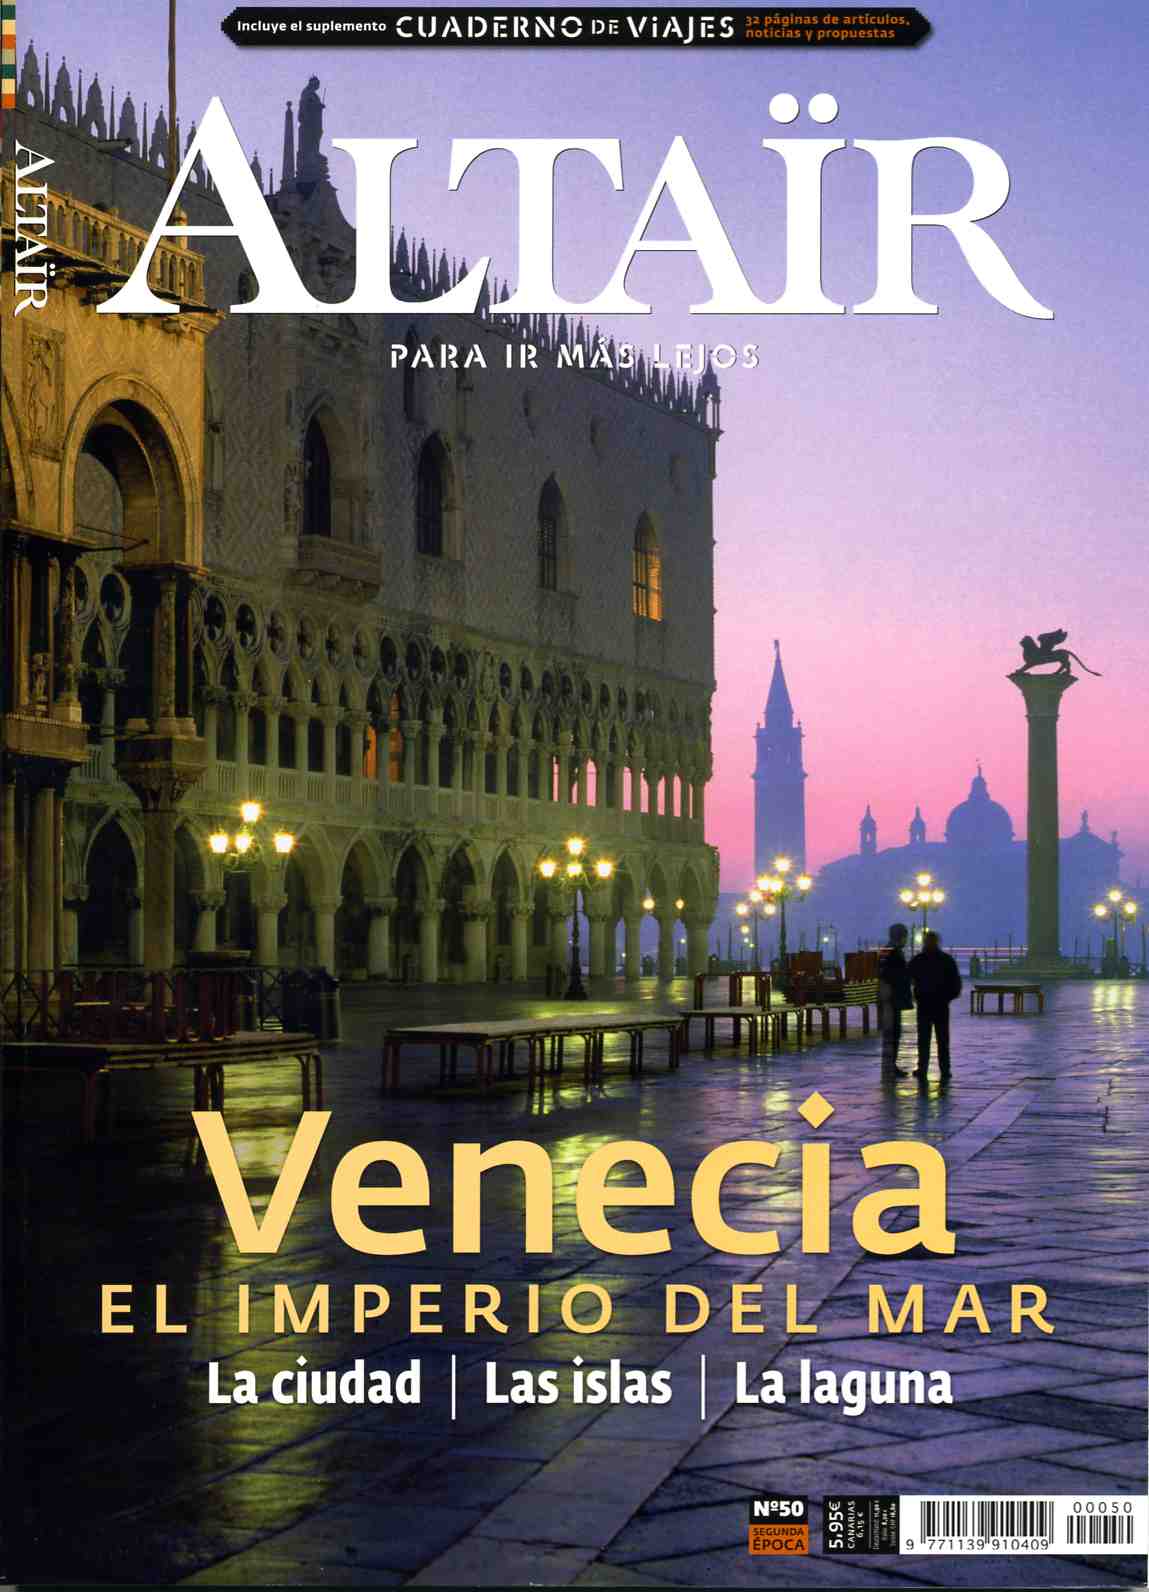 [ALTAIR+Venecia.jpg]